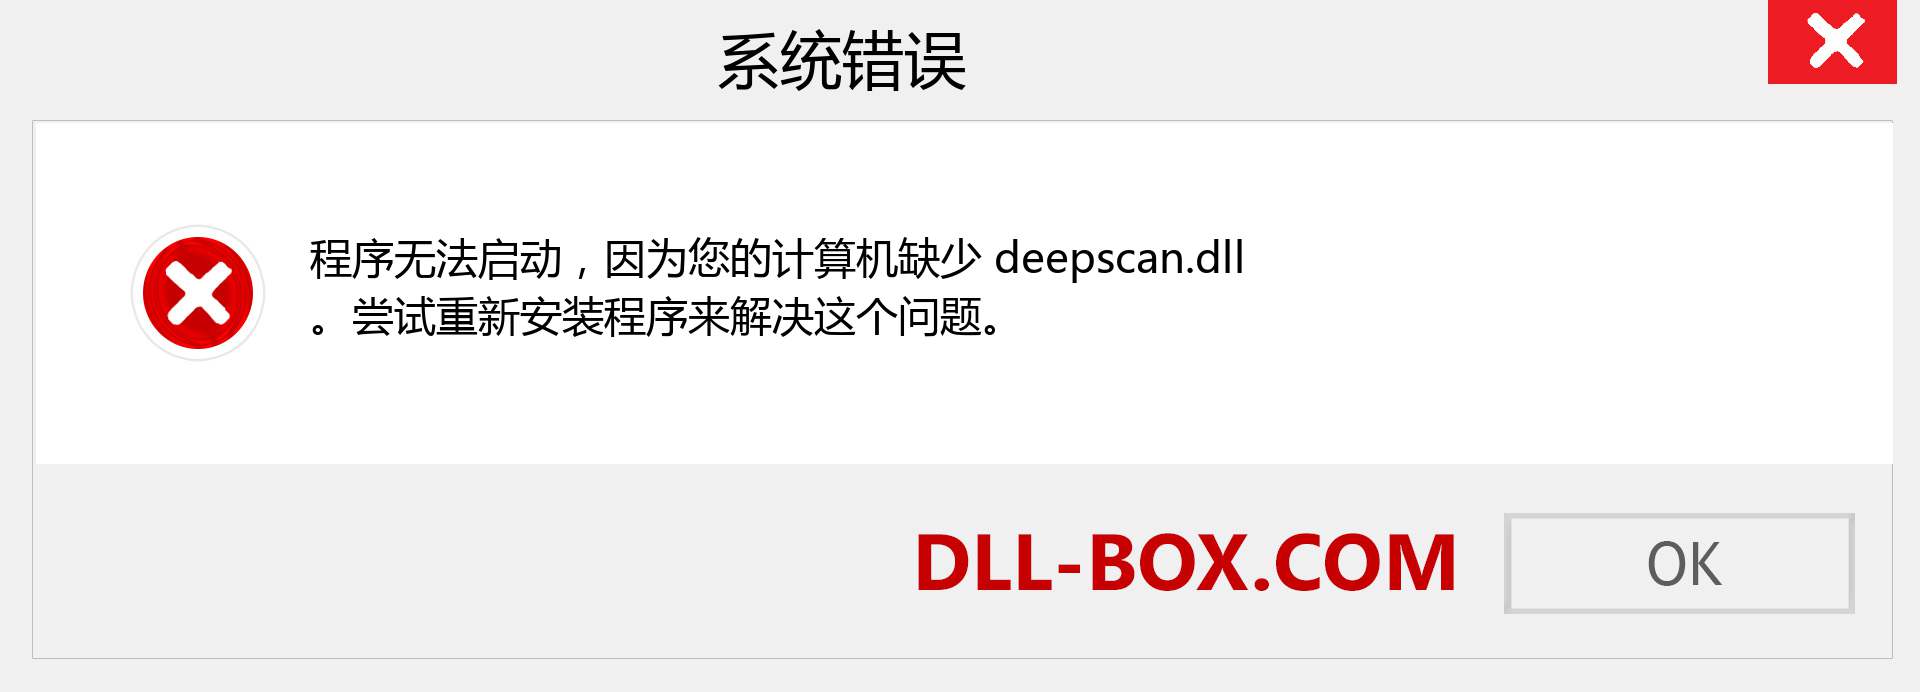 deepscan.dll 文件丢失？。 适用于 Windows 7、8、10 的下载 - 修复 Windows、照片、图像上的 deepscan dll 丢失错误